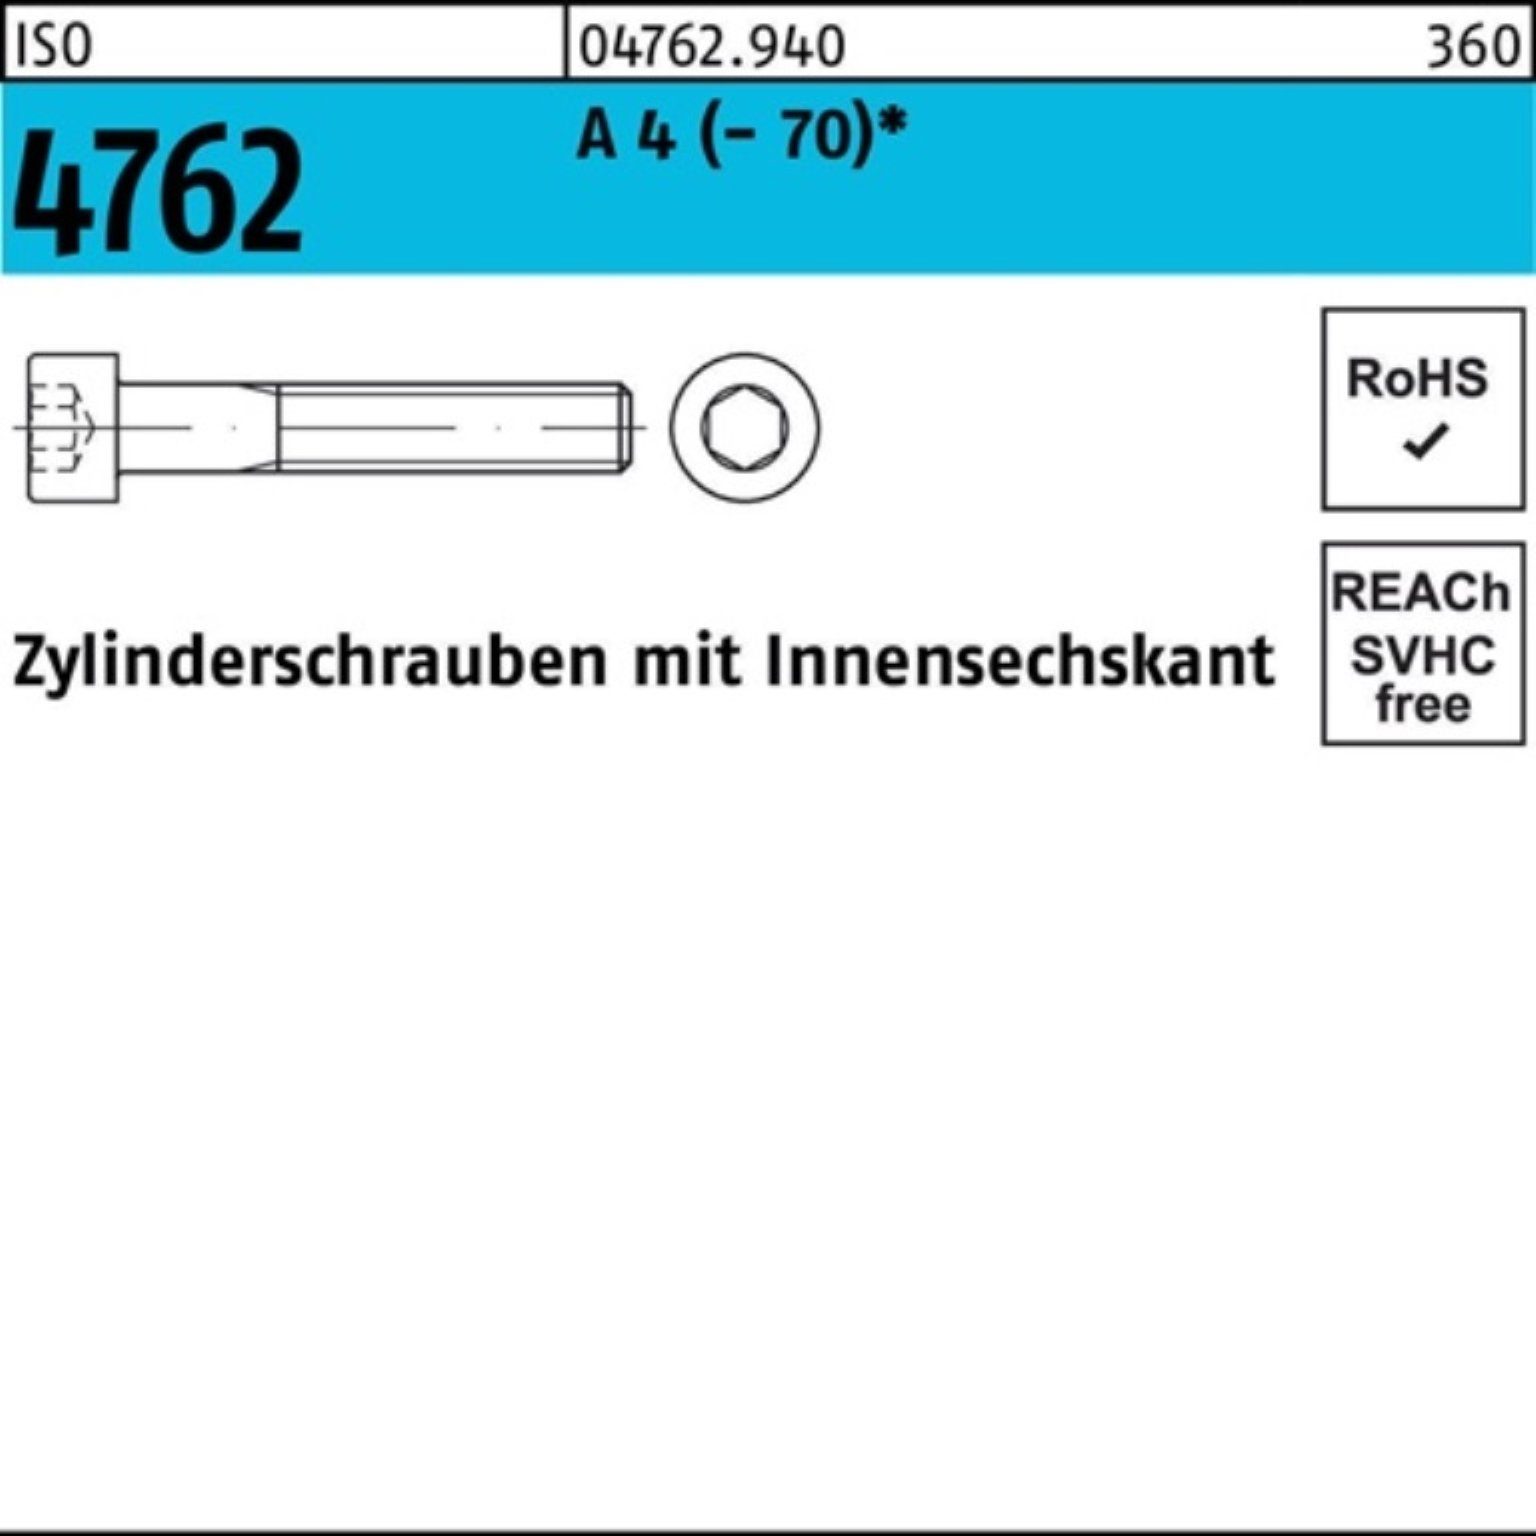 Pack 100 20 Zylinderschraube S ISO 4 M6x Reyher (70) A Innen-6kt 100er Zylinderschraube 4762